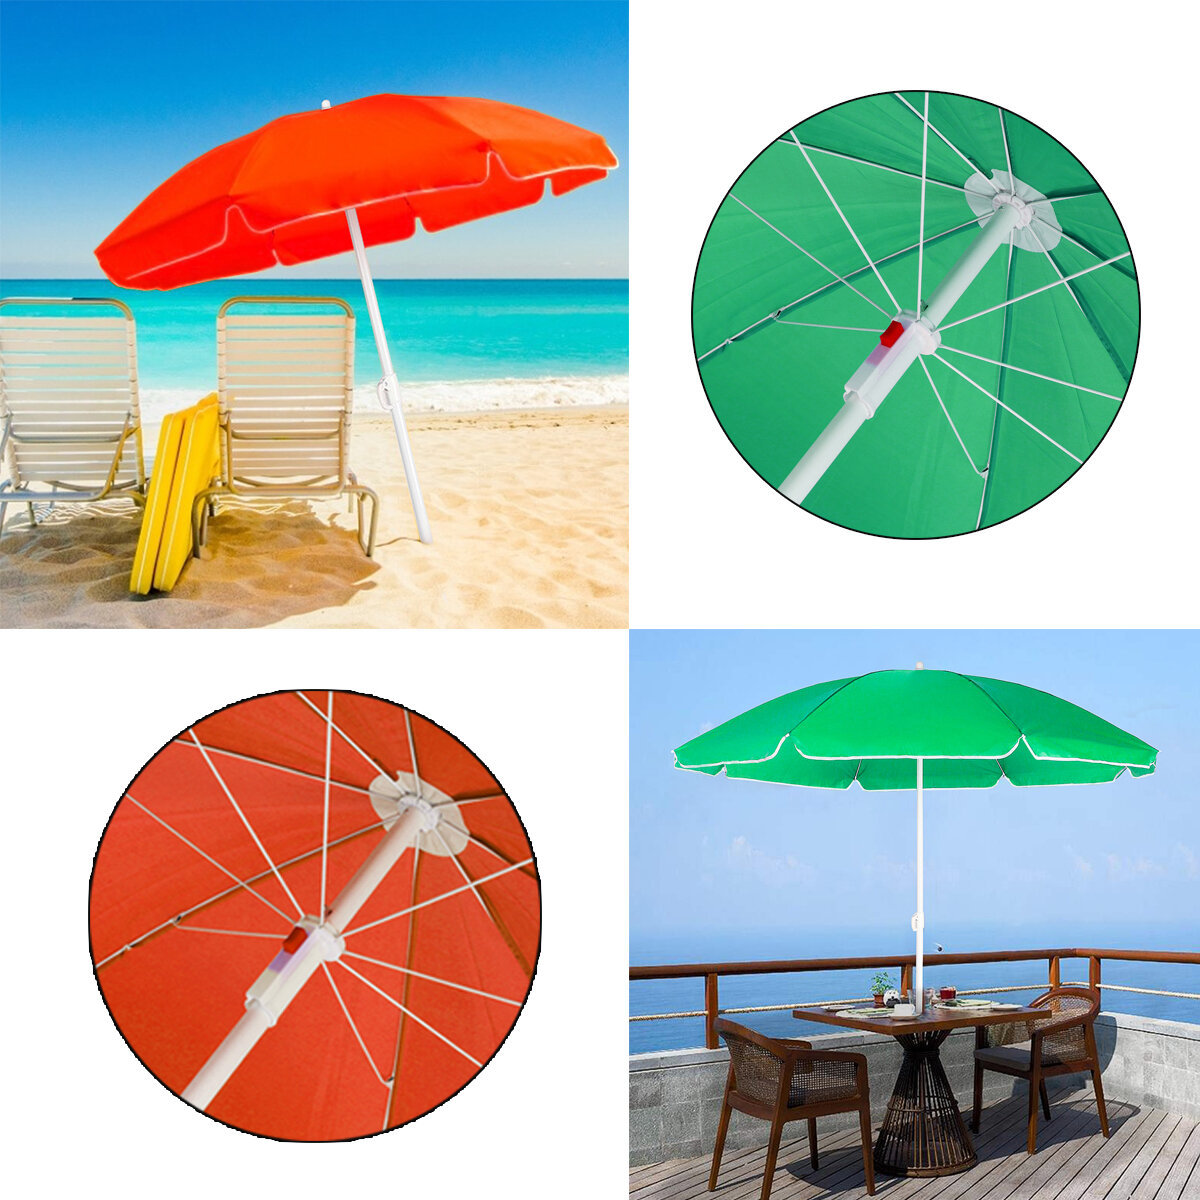 Φορητή ομπρέλα παραλίας με καρέκλα κατασκευής, διάμετρος 1,8 μέτρα, ομπρέλα, προστασία από την ακτινοβολία UV, καρφί για στήριξη.